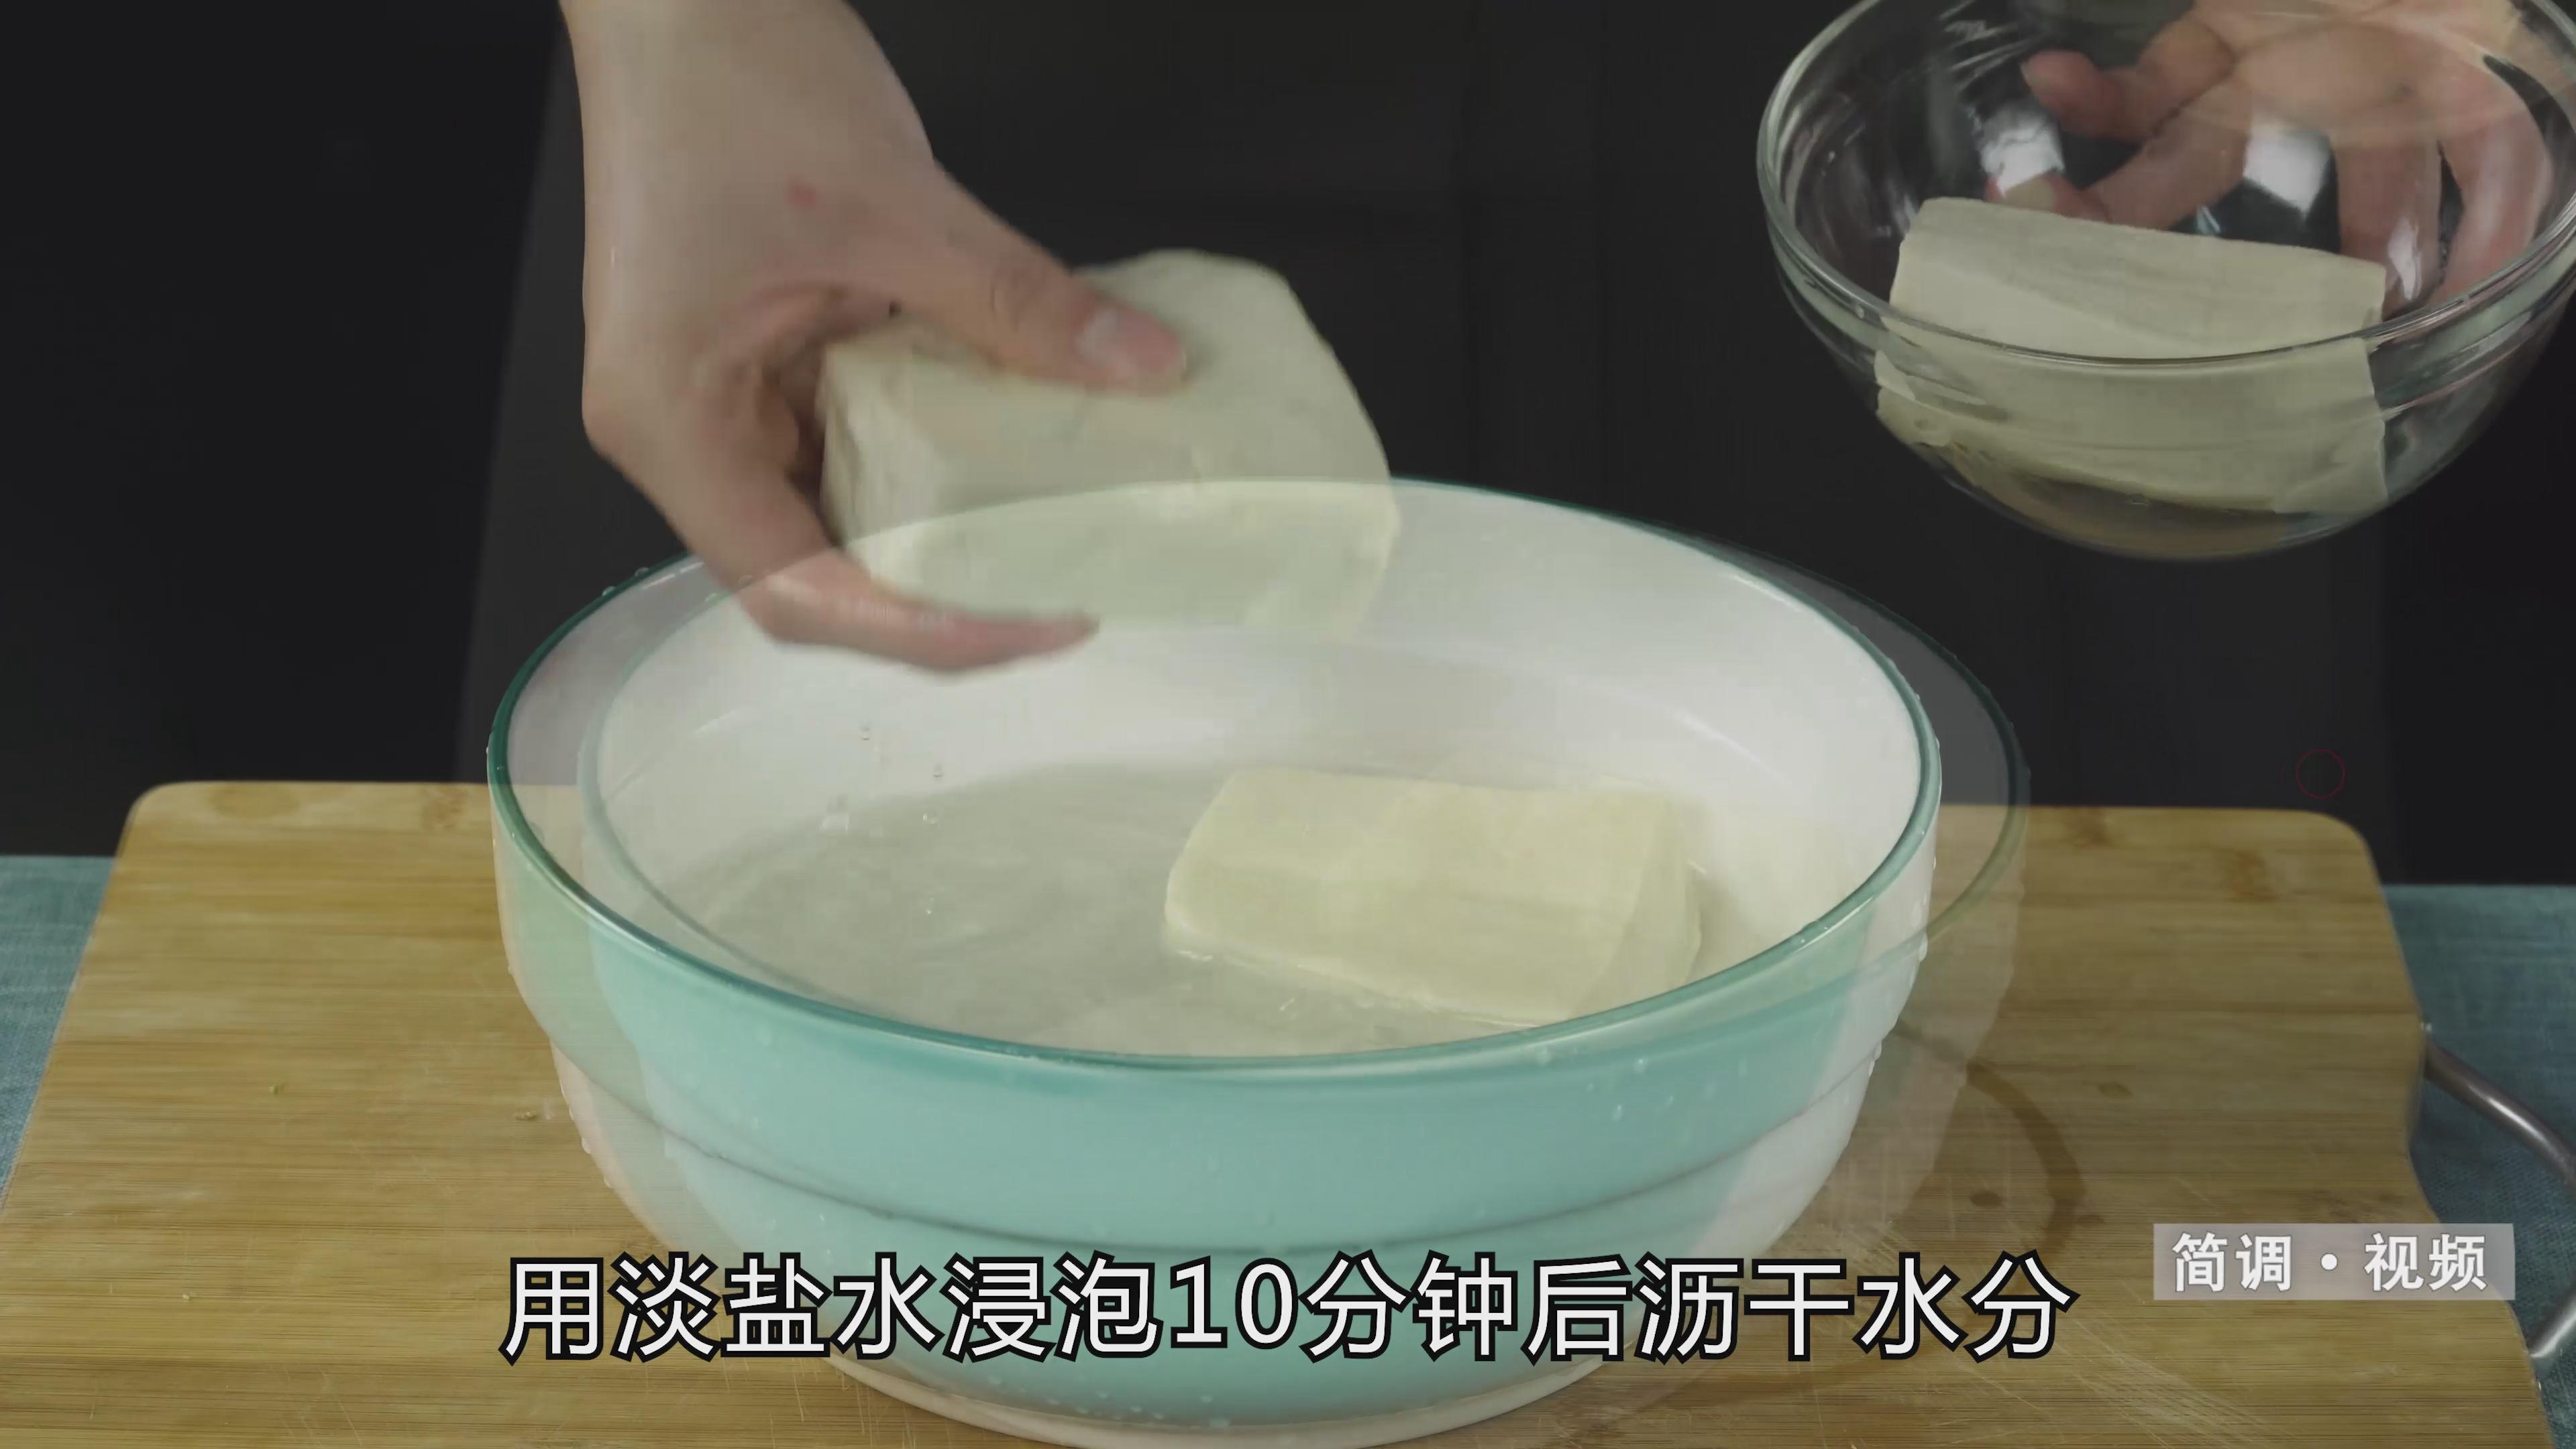 麻婆豆腐的做法 麻婆豆腐的做法和步骤